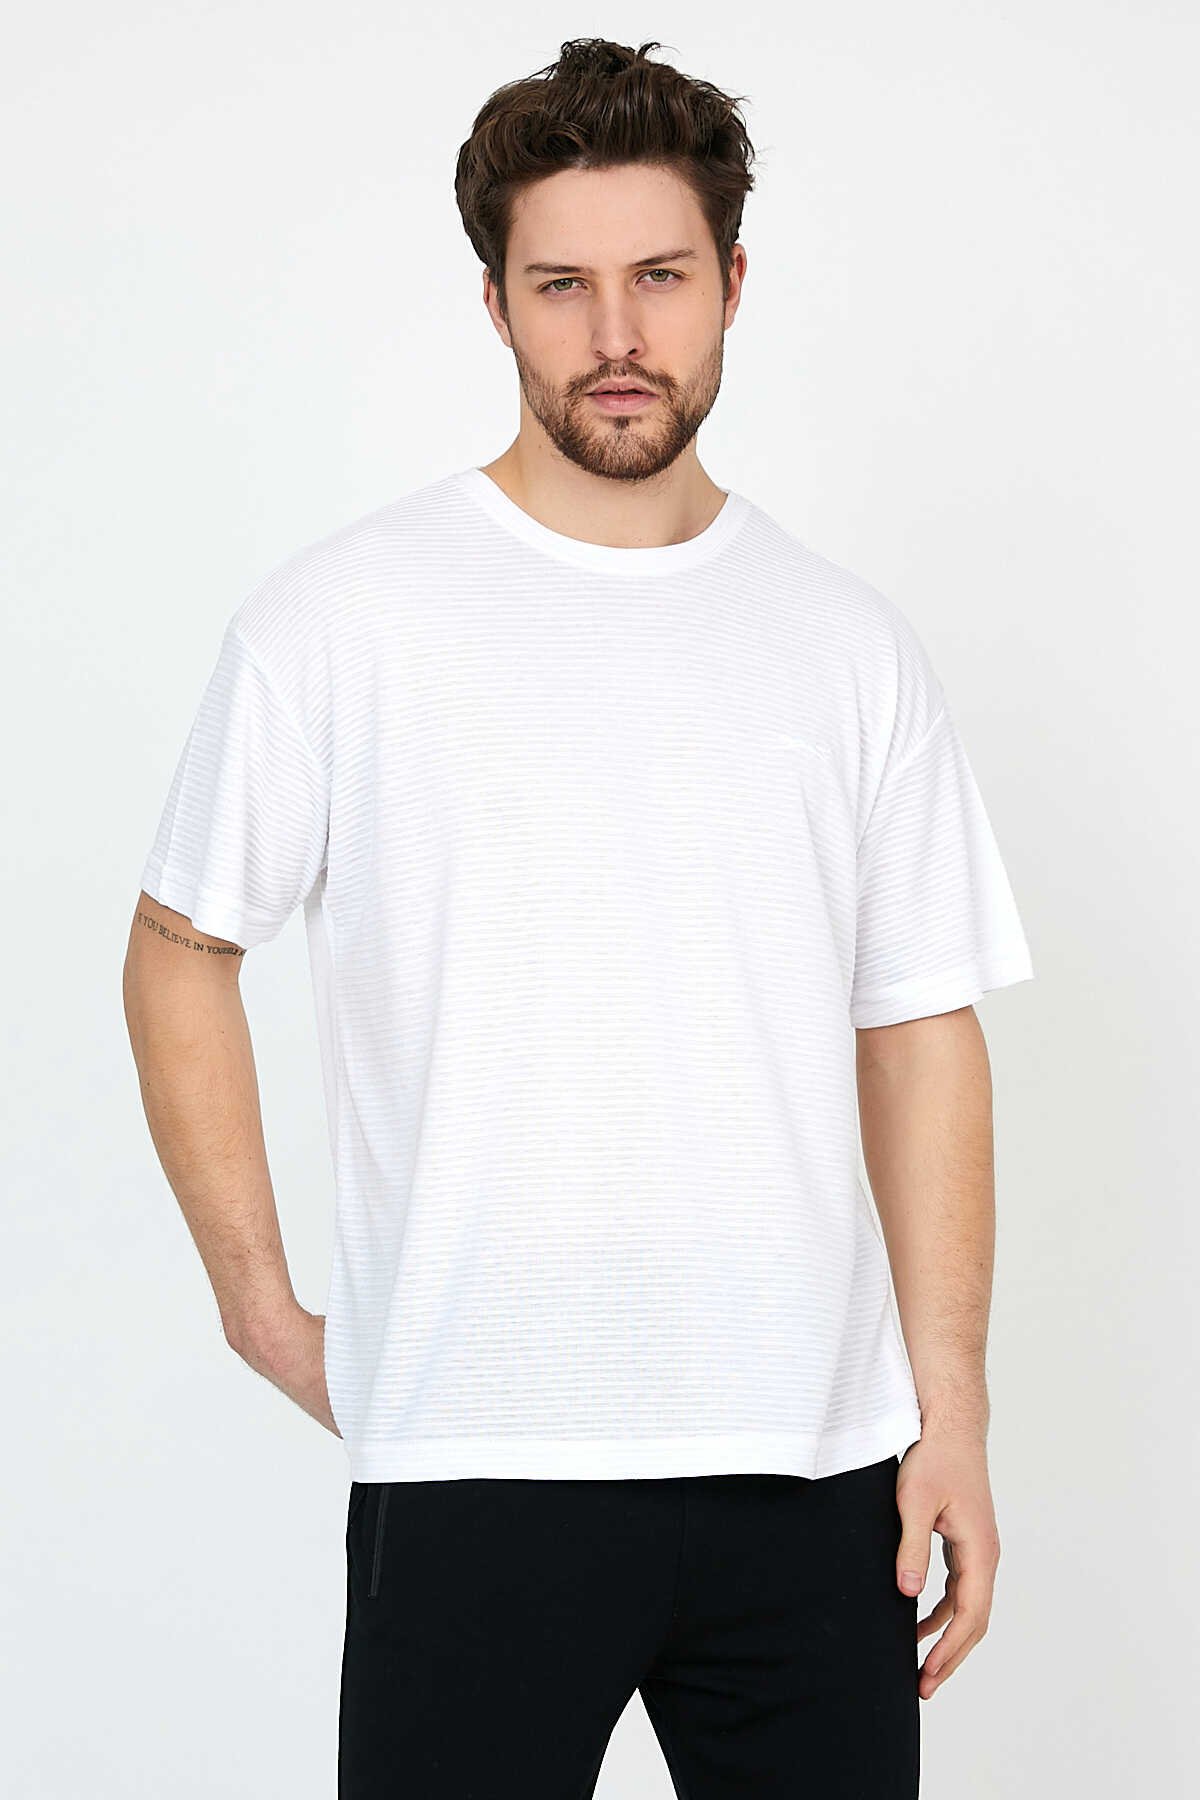 Slazenger - Slazenger BALDOVIN Erkek T-Shirt Beyaz